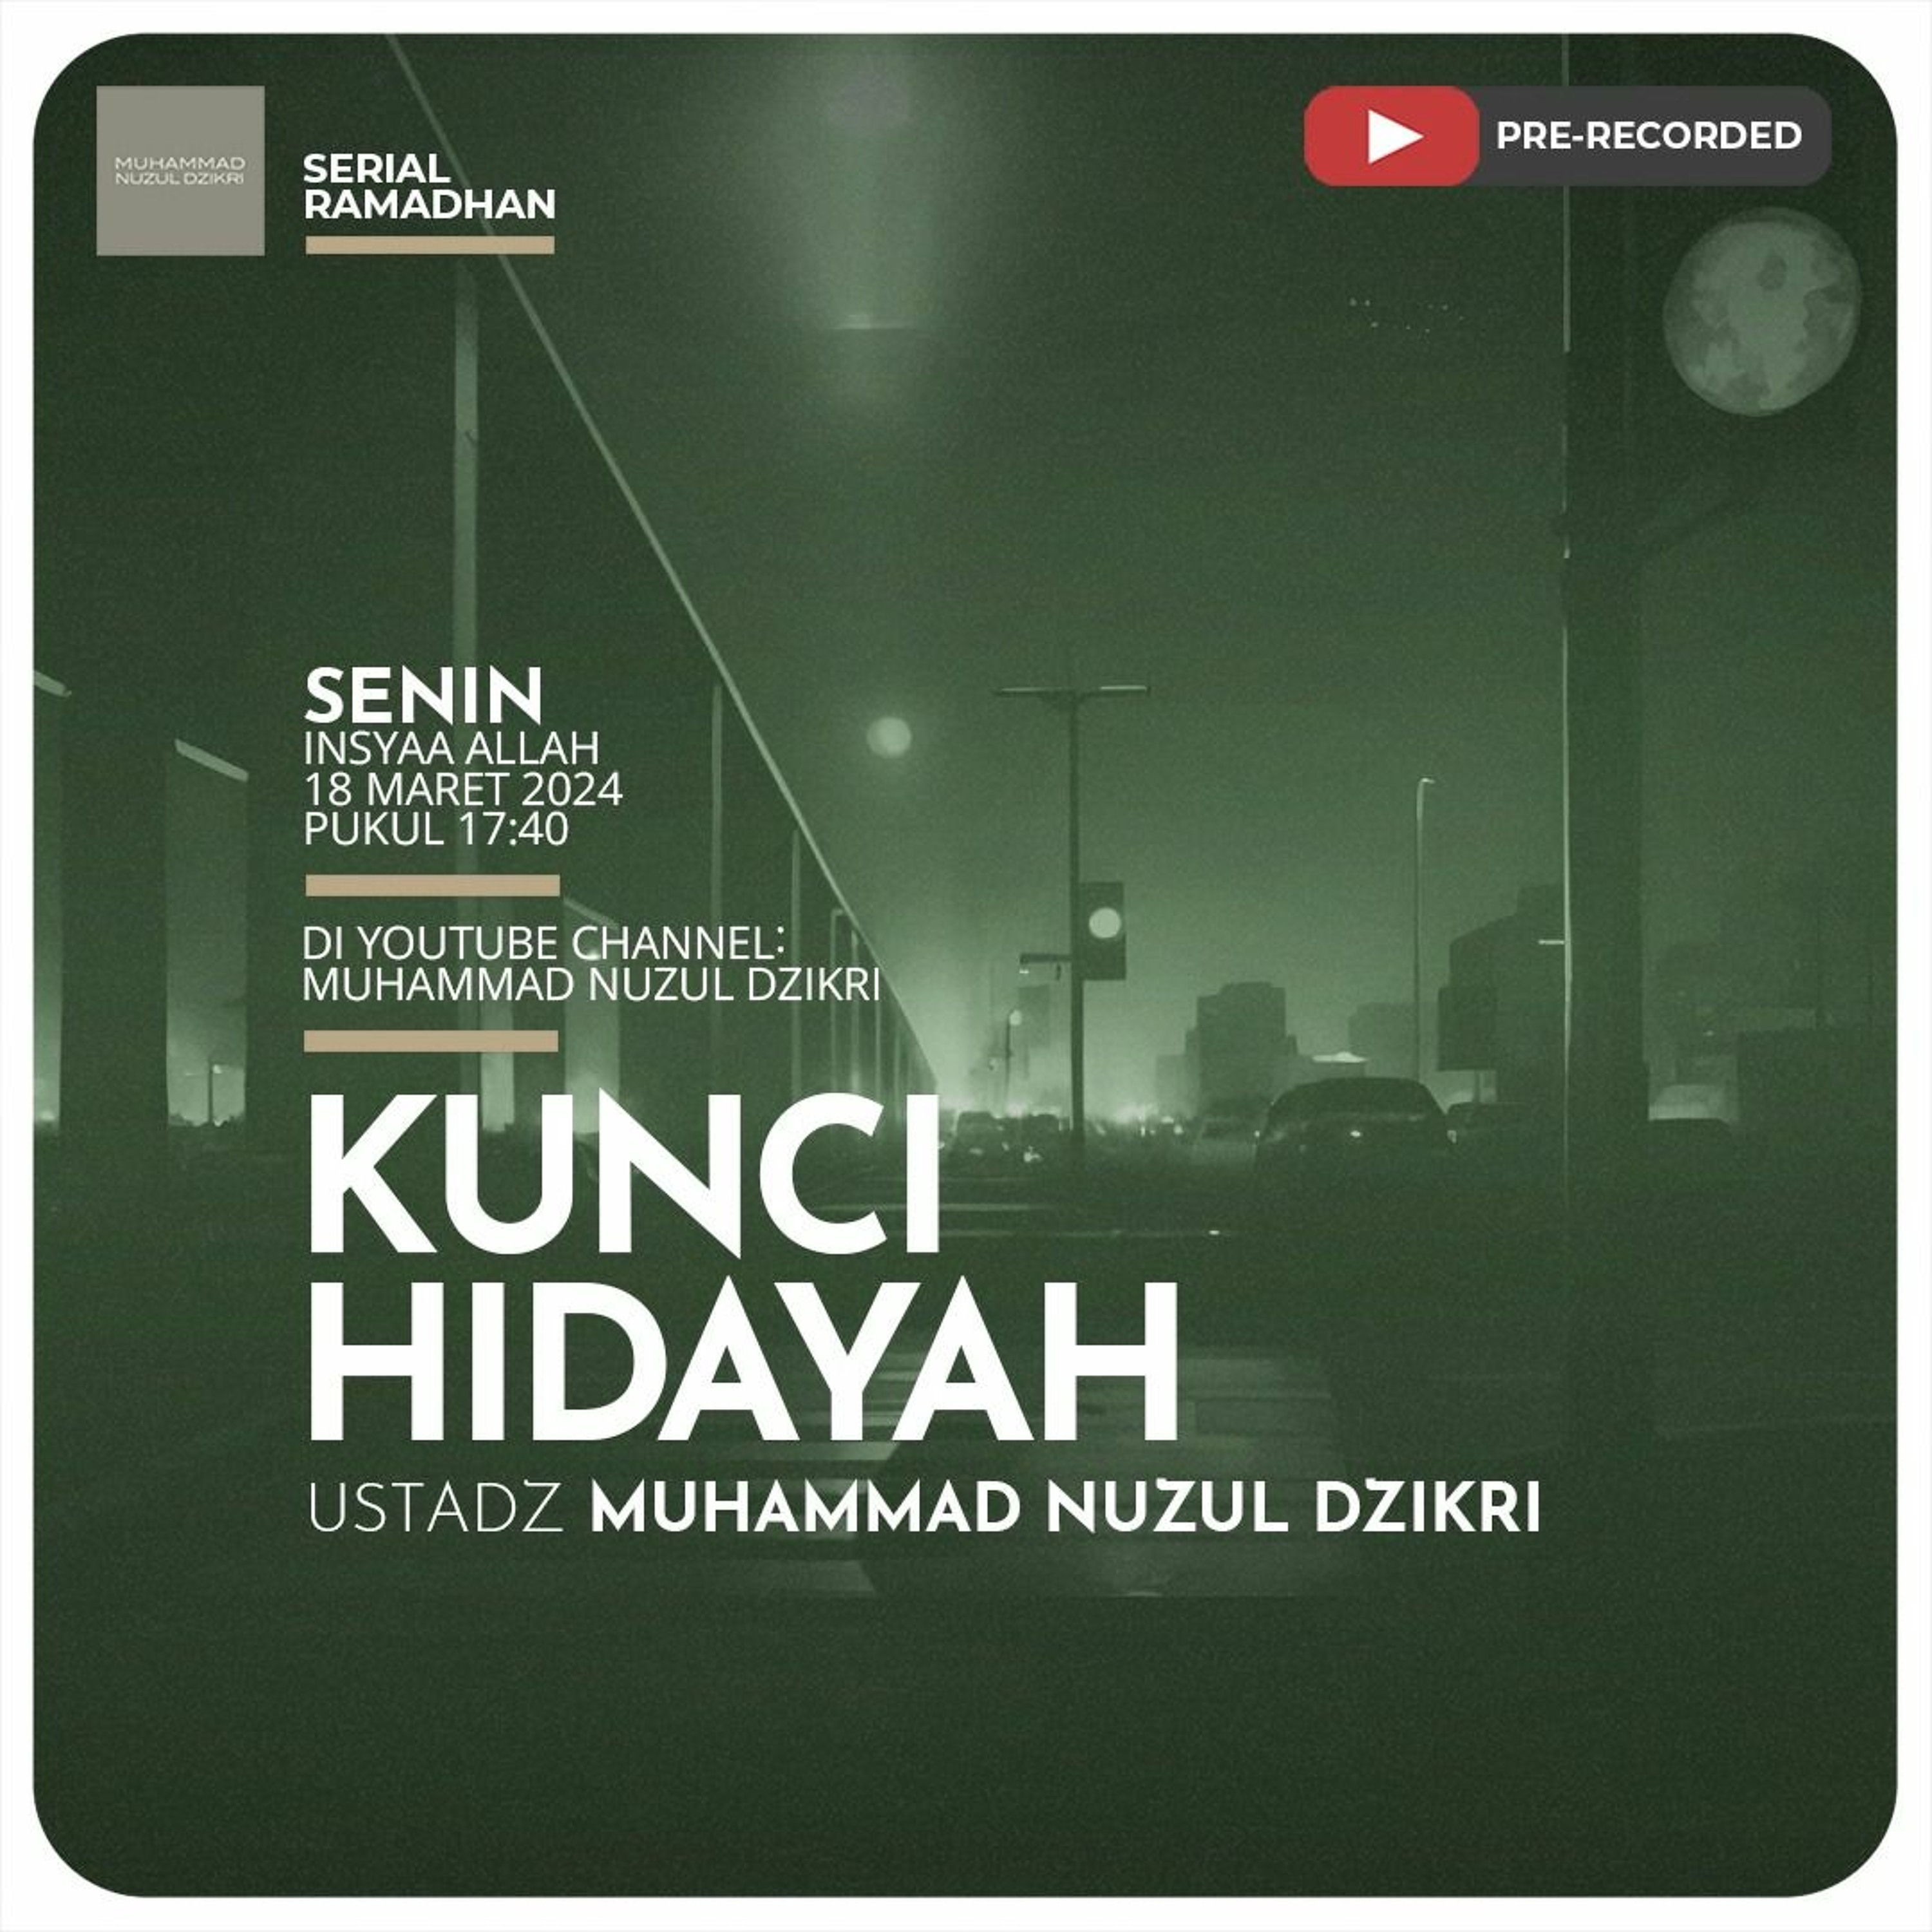 Serial Ramadhan 07. ”KUNCI HIDAYAH” - Ustadz Muhammad Nuzul Dzikri